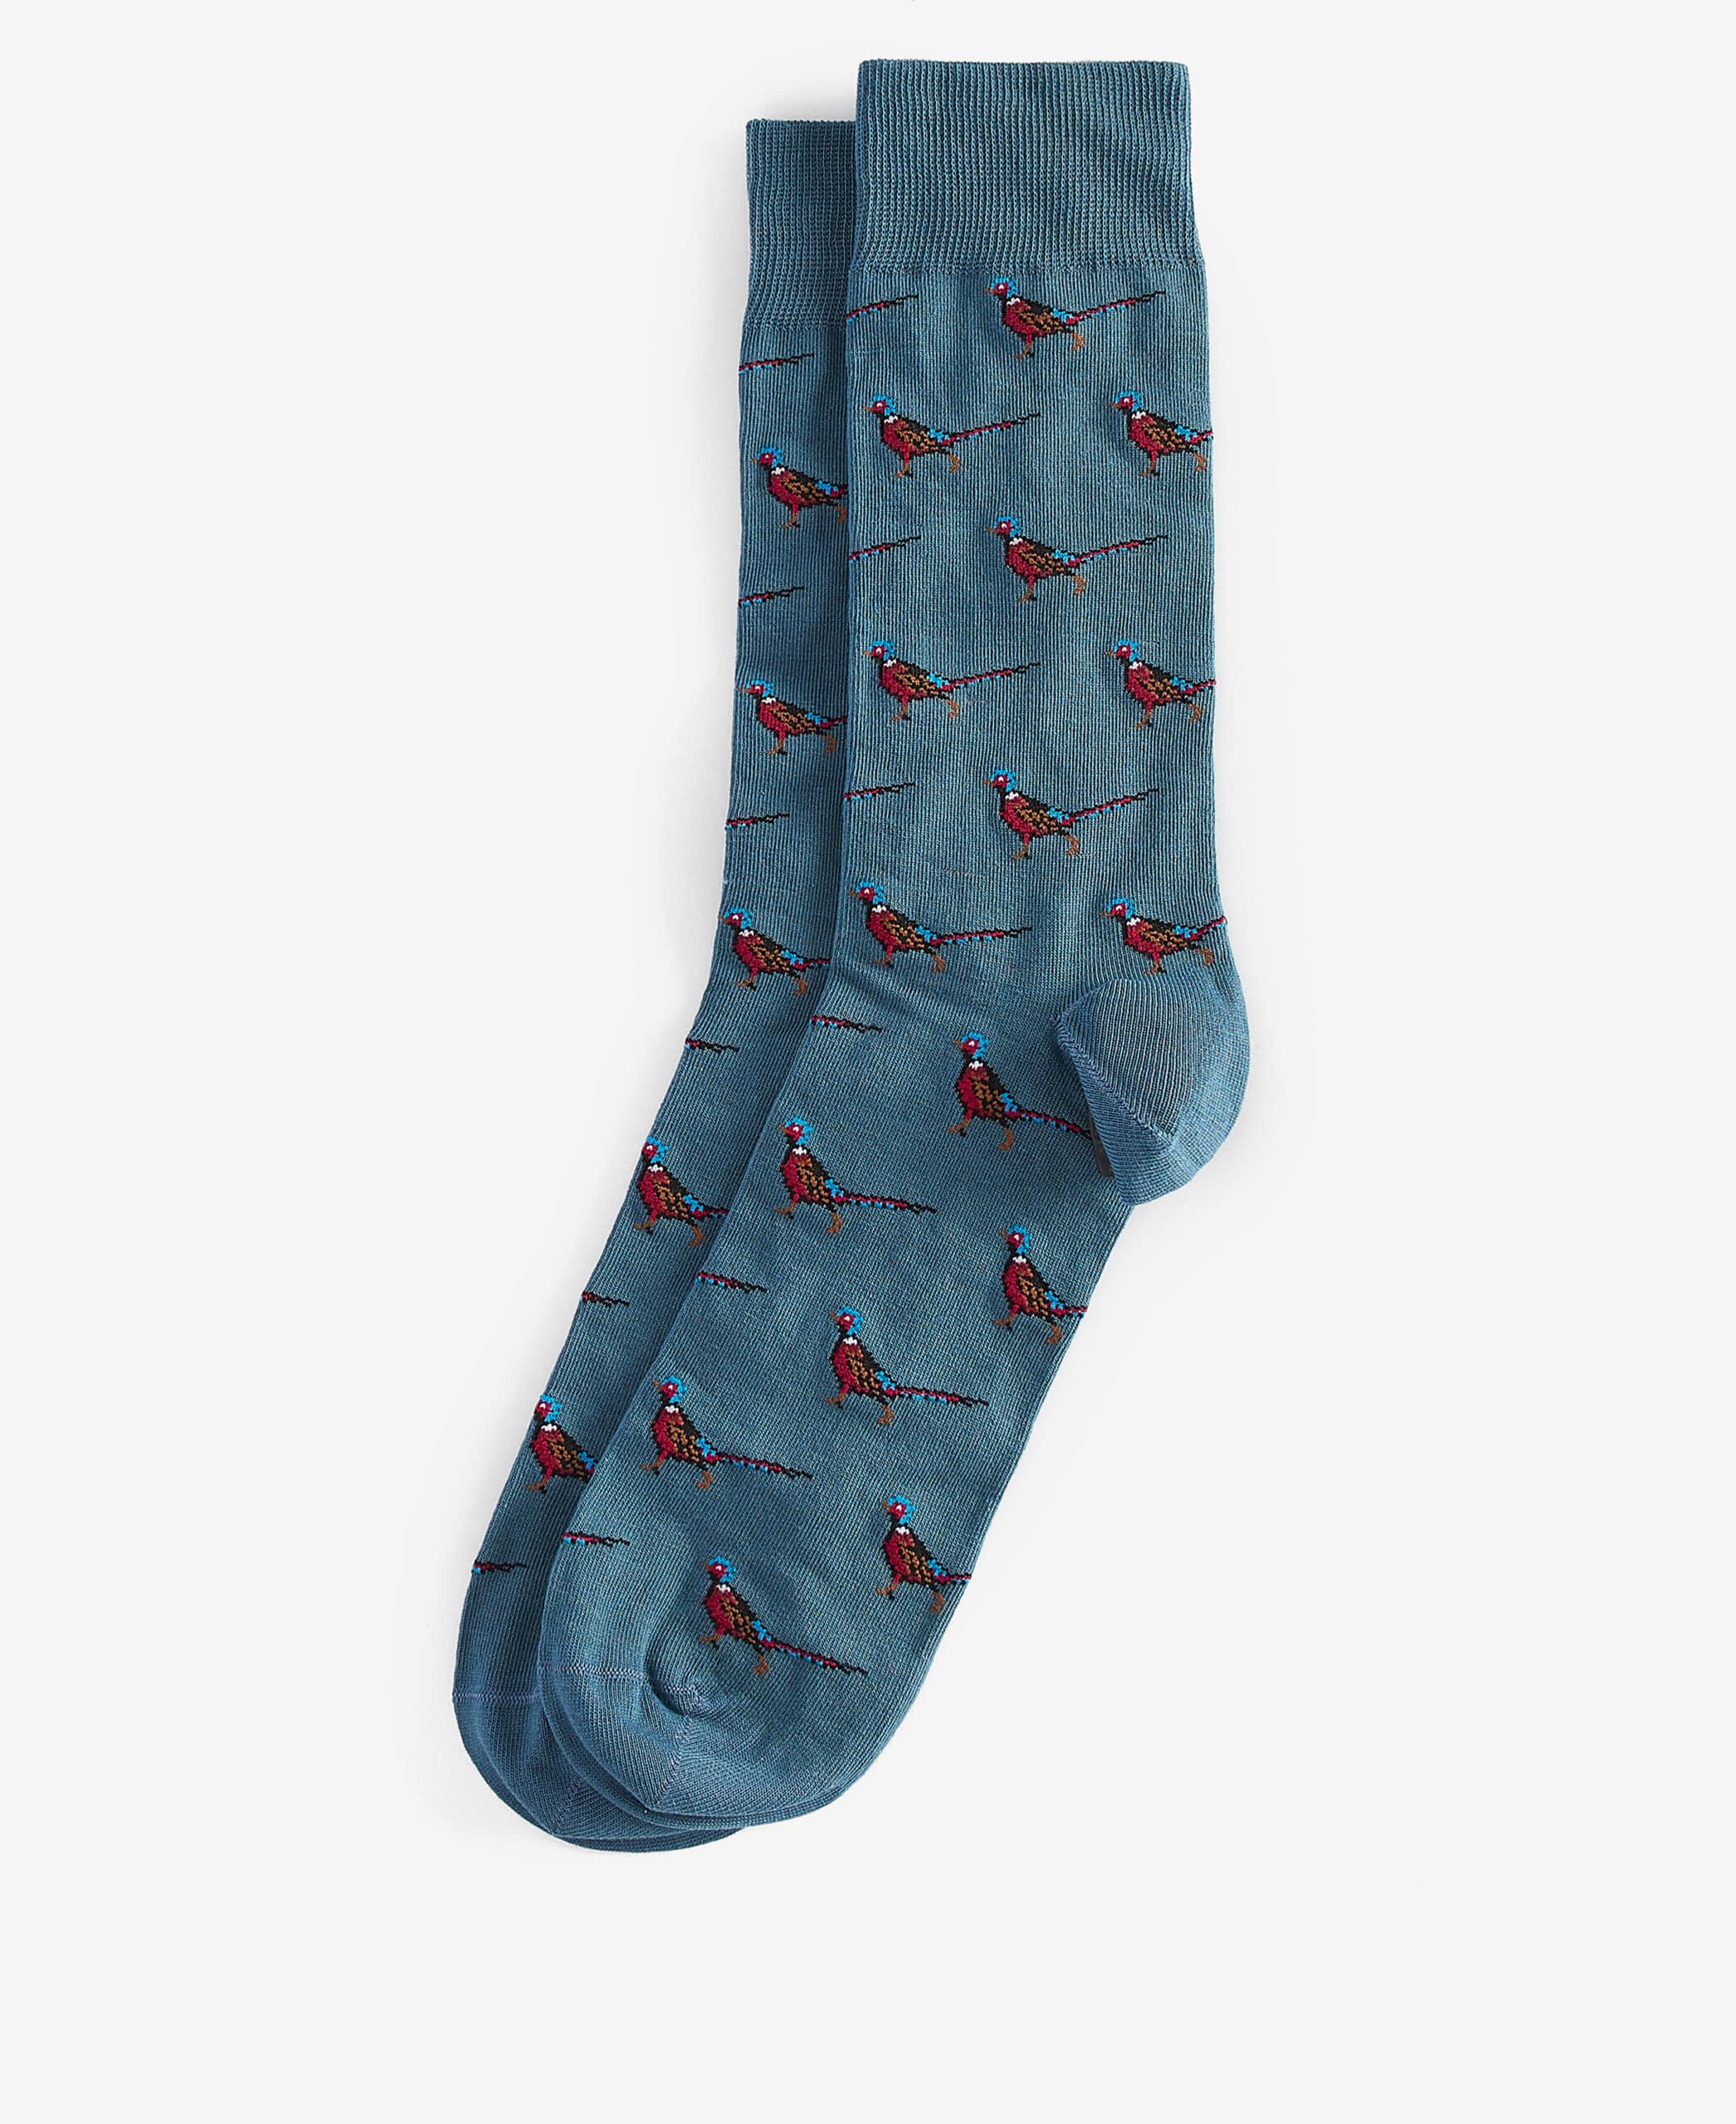 Mavin Socks – Blue Pheasant